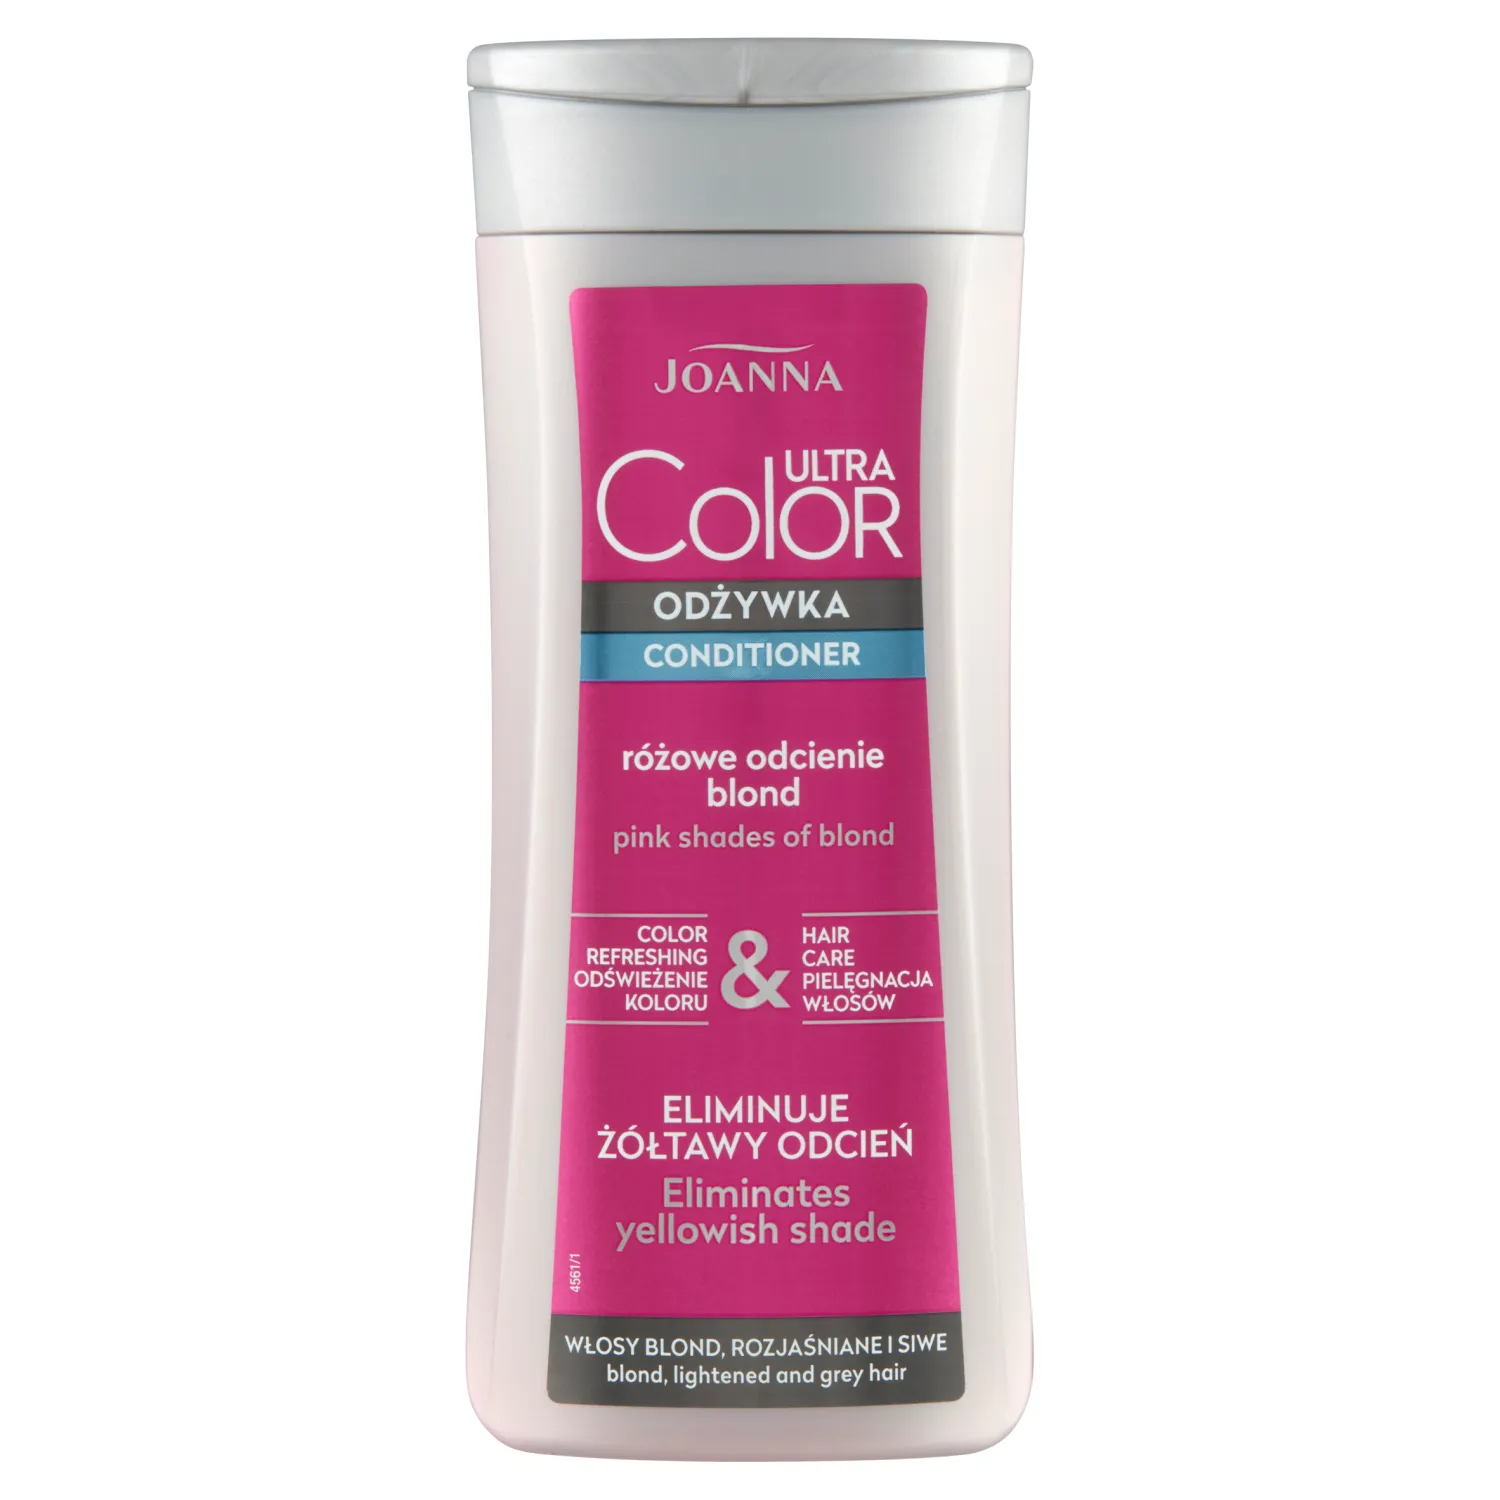 Joanna Ultra Color odżywka do włosów różowe odcienie blond, 200 g